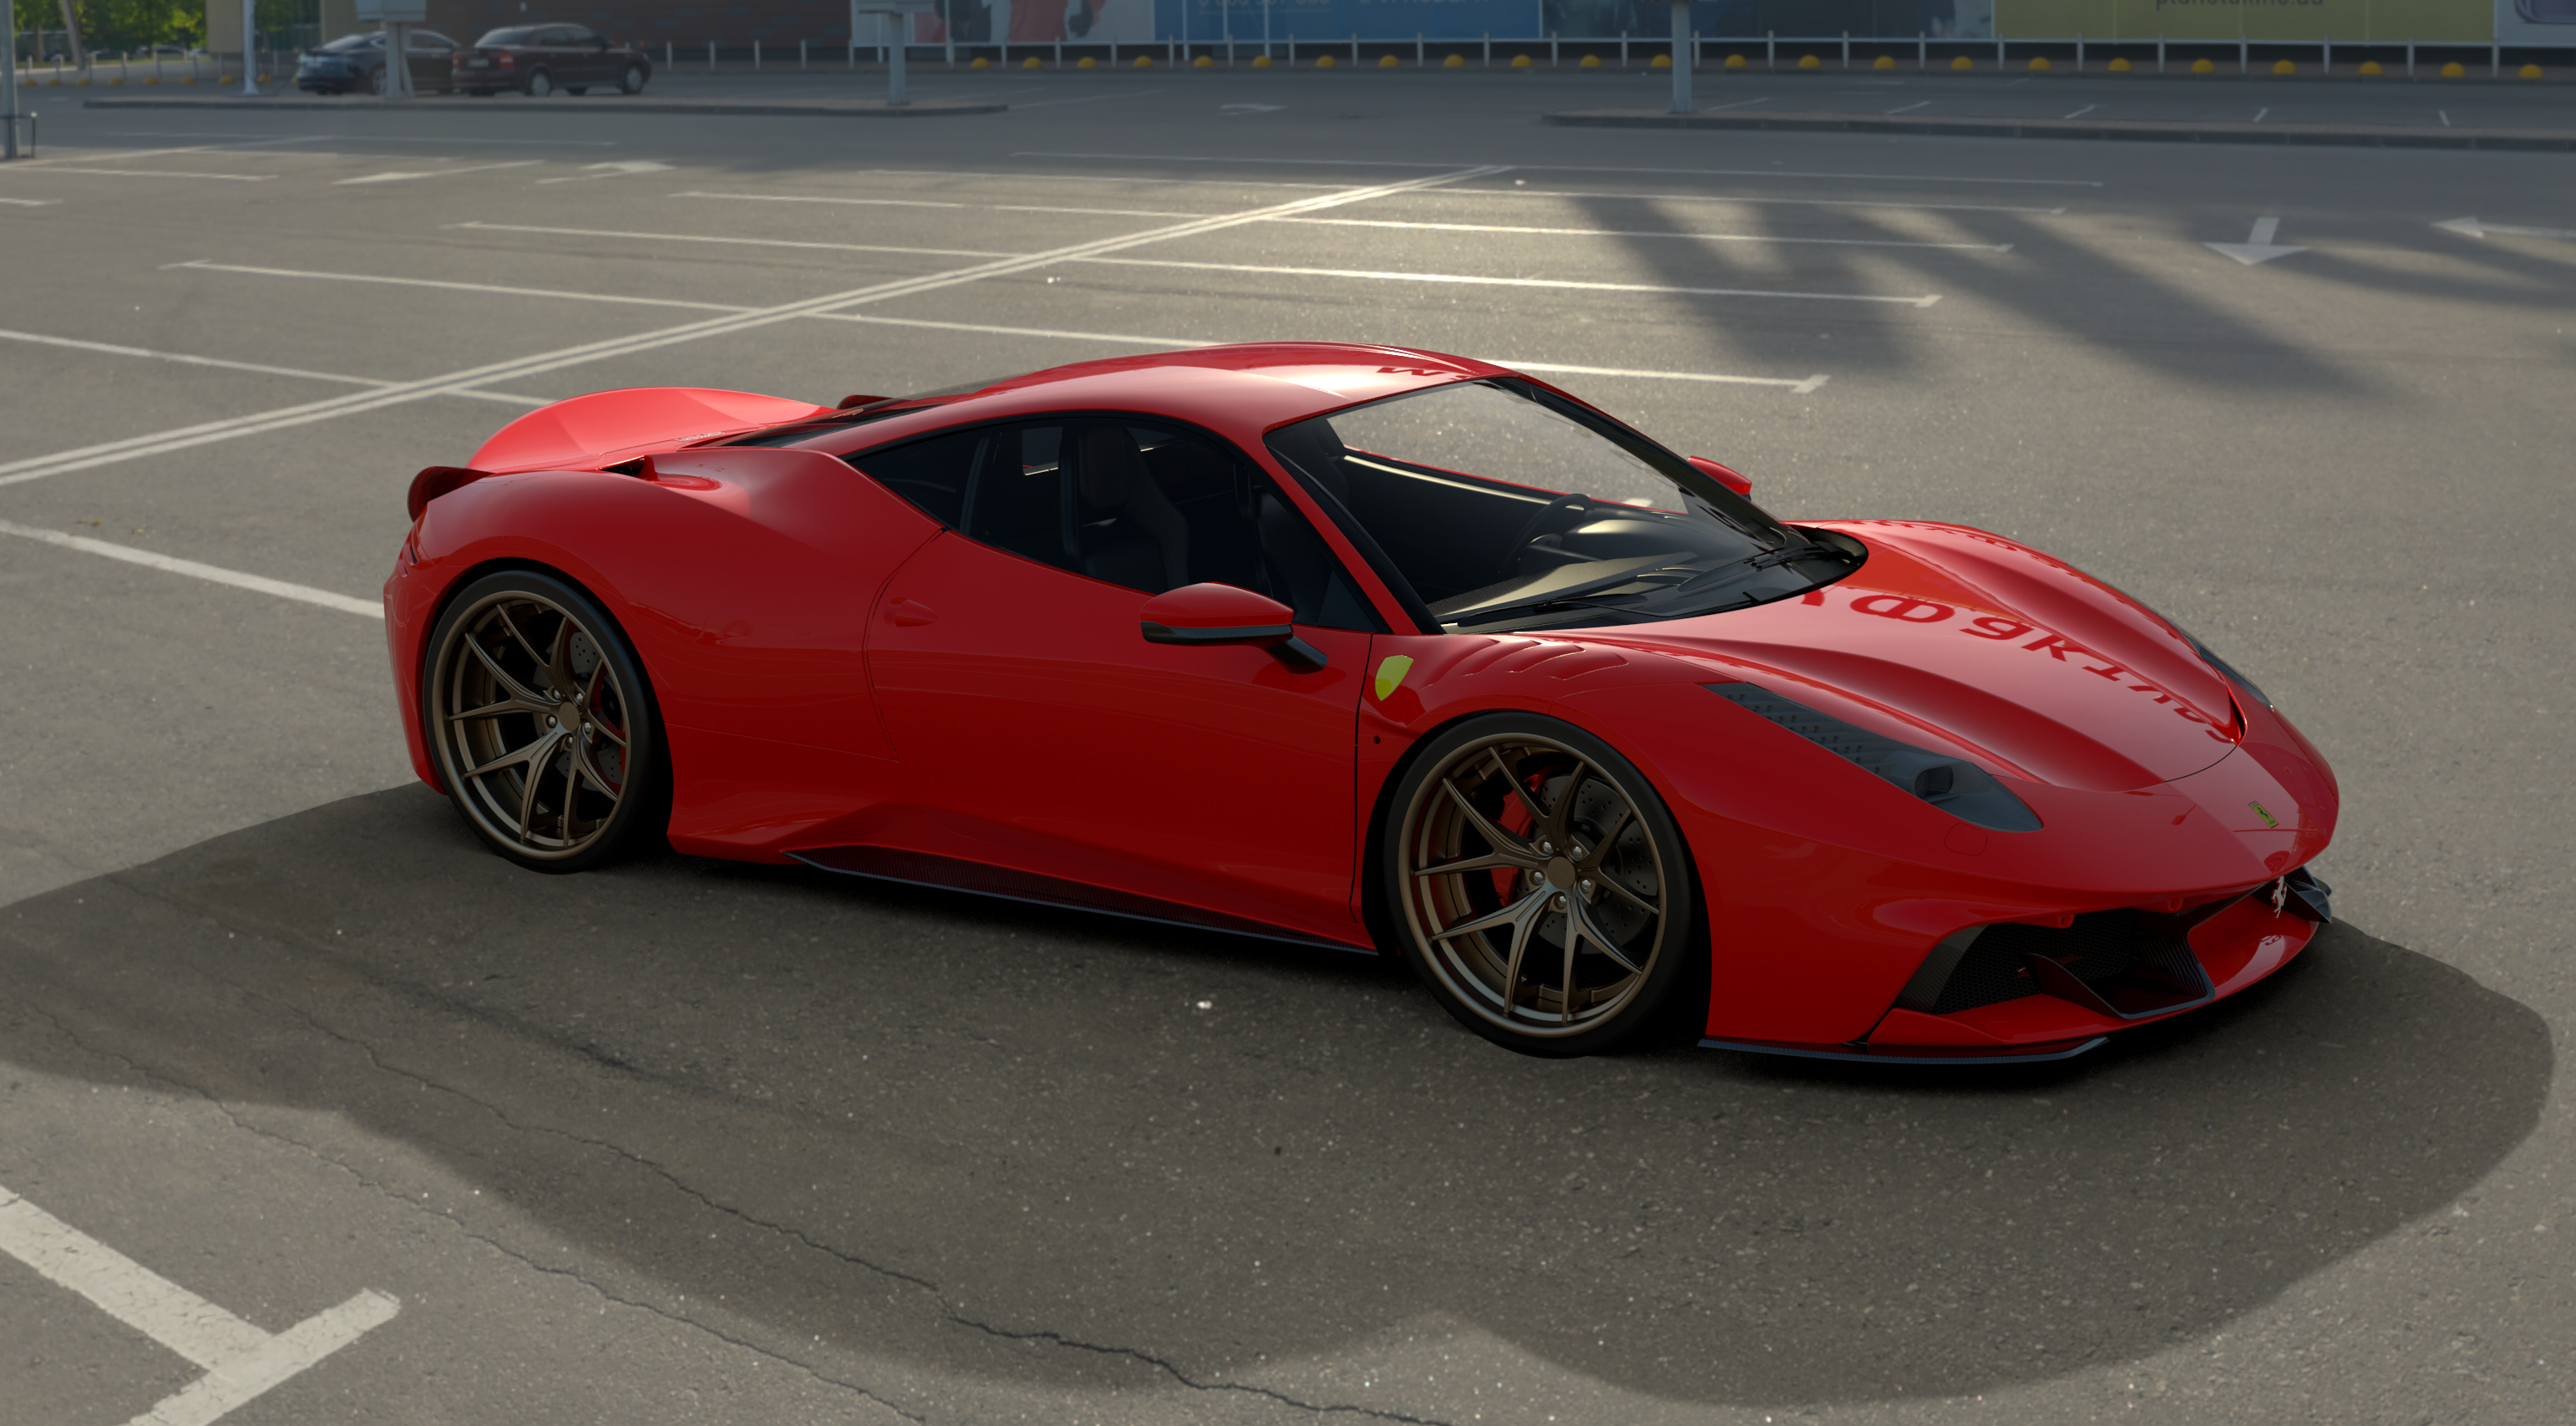 Check price and buy Duke Dynamics Body kit set for Ferrari 458
